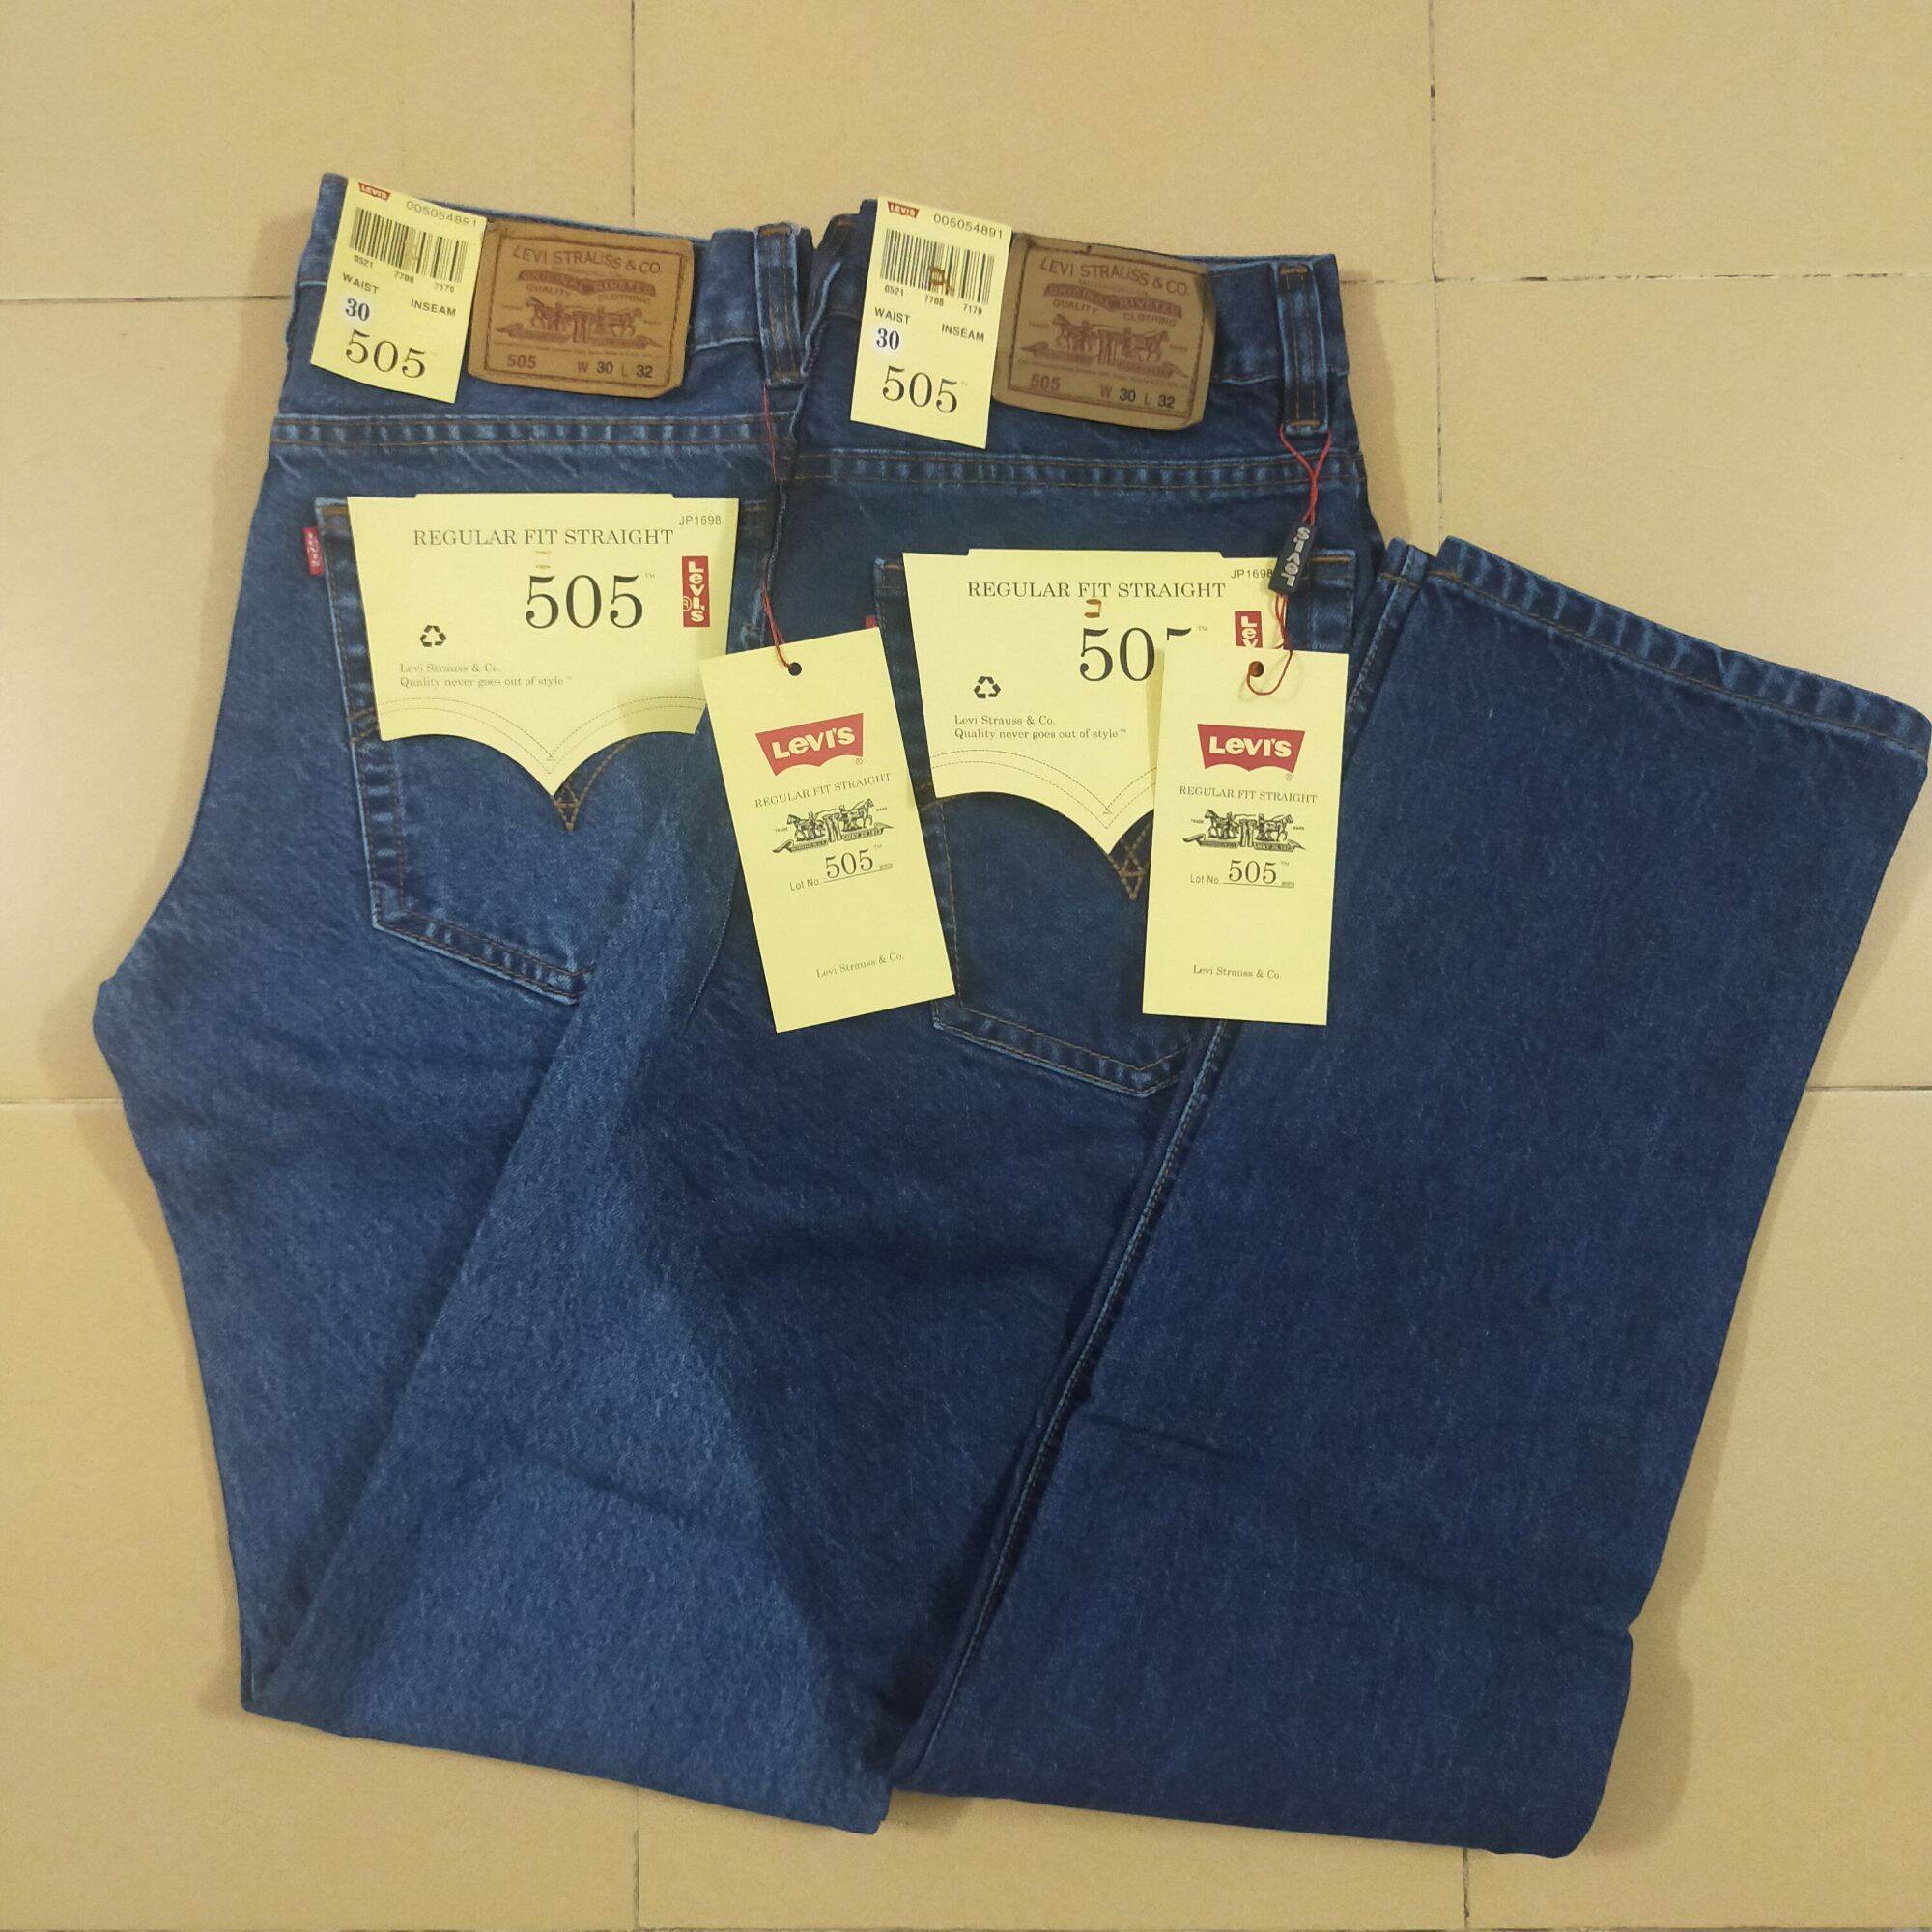 Mua Levi's Quần Jeans, Áo Thun Nam Nữ Thời Trang, Giá Tốt 